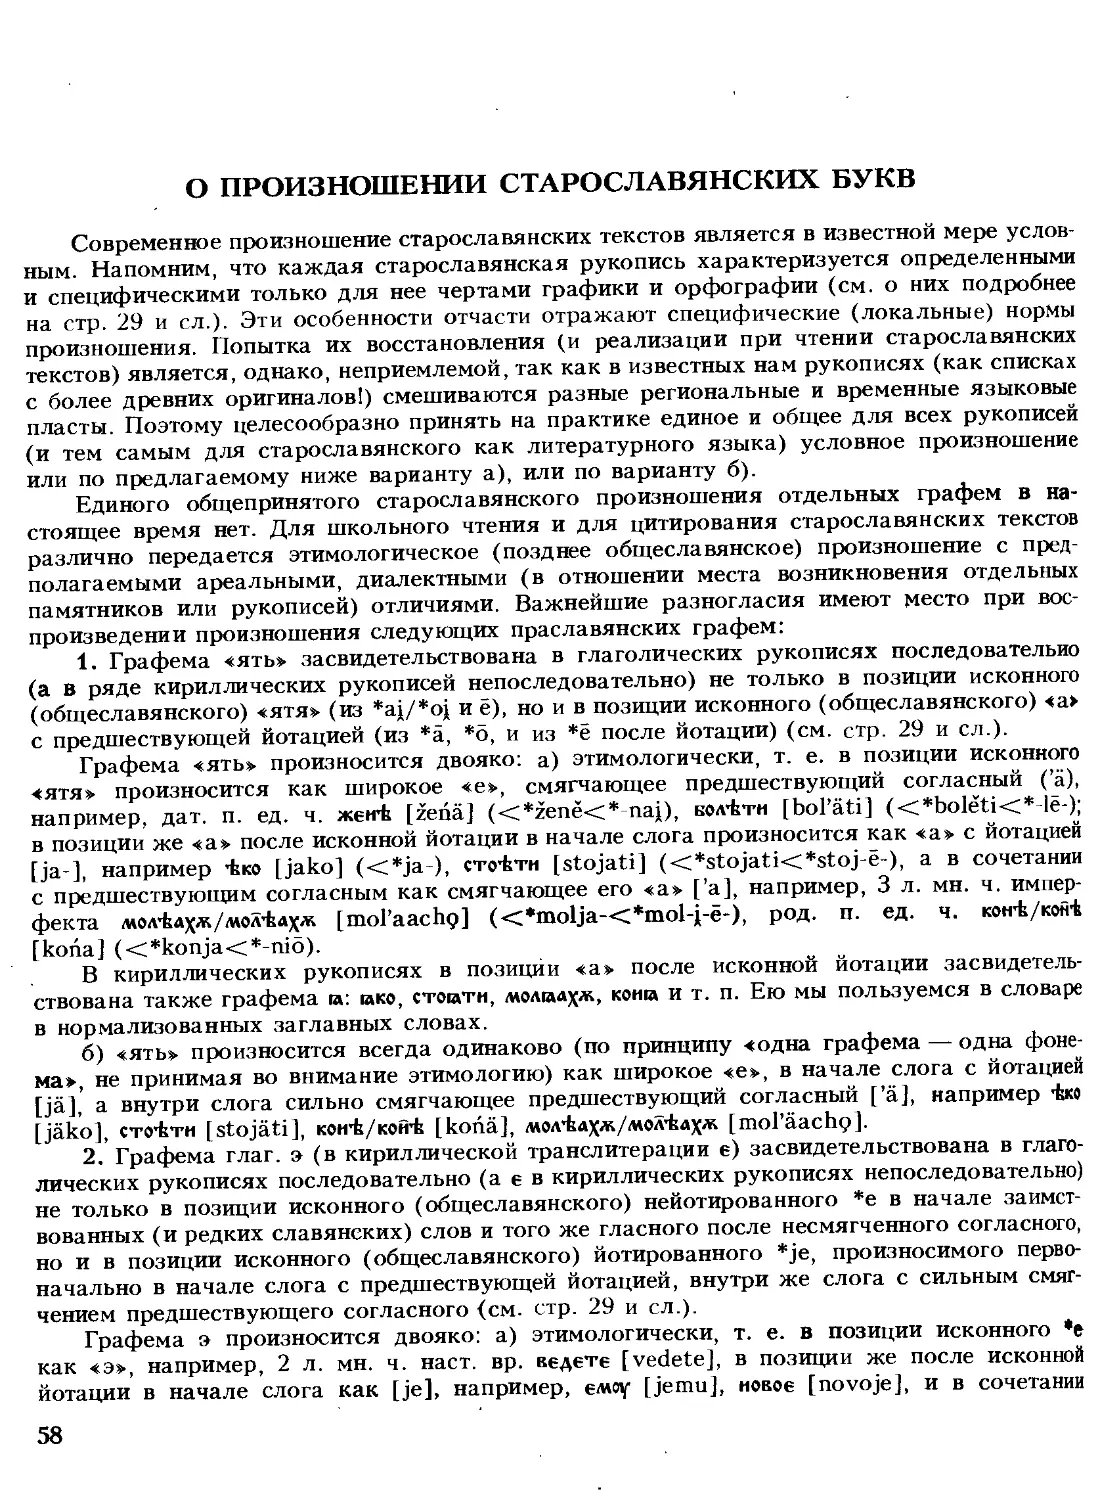 О произношении старославянских букв